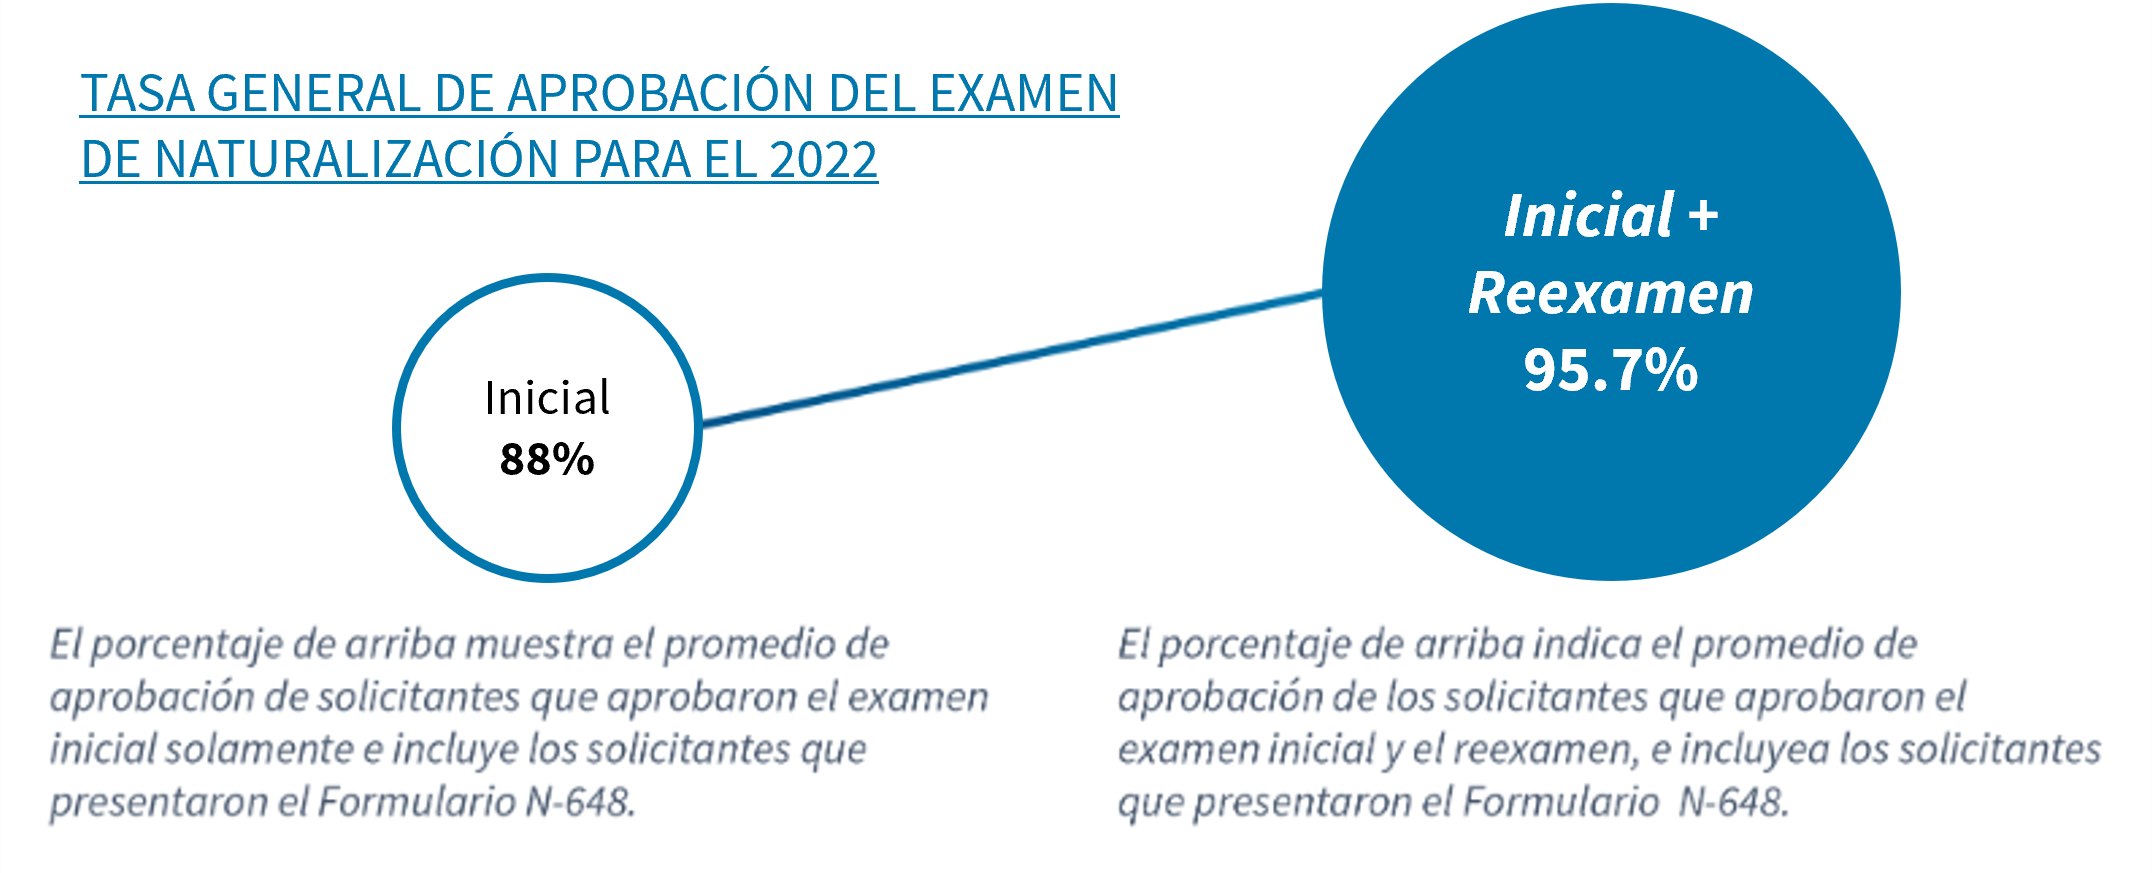 Tasa General de Aprobación del Examen de Naturalización para el 2022